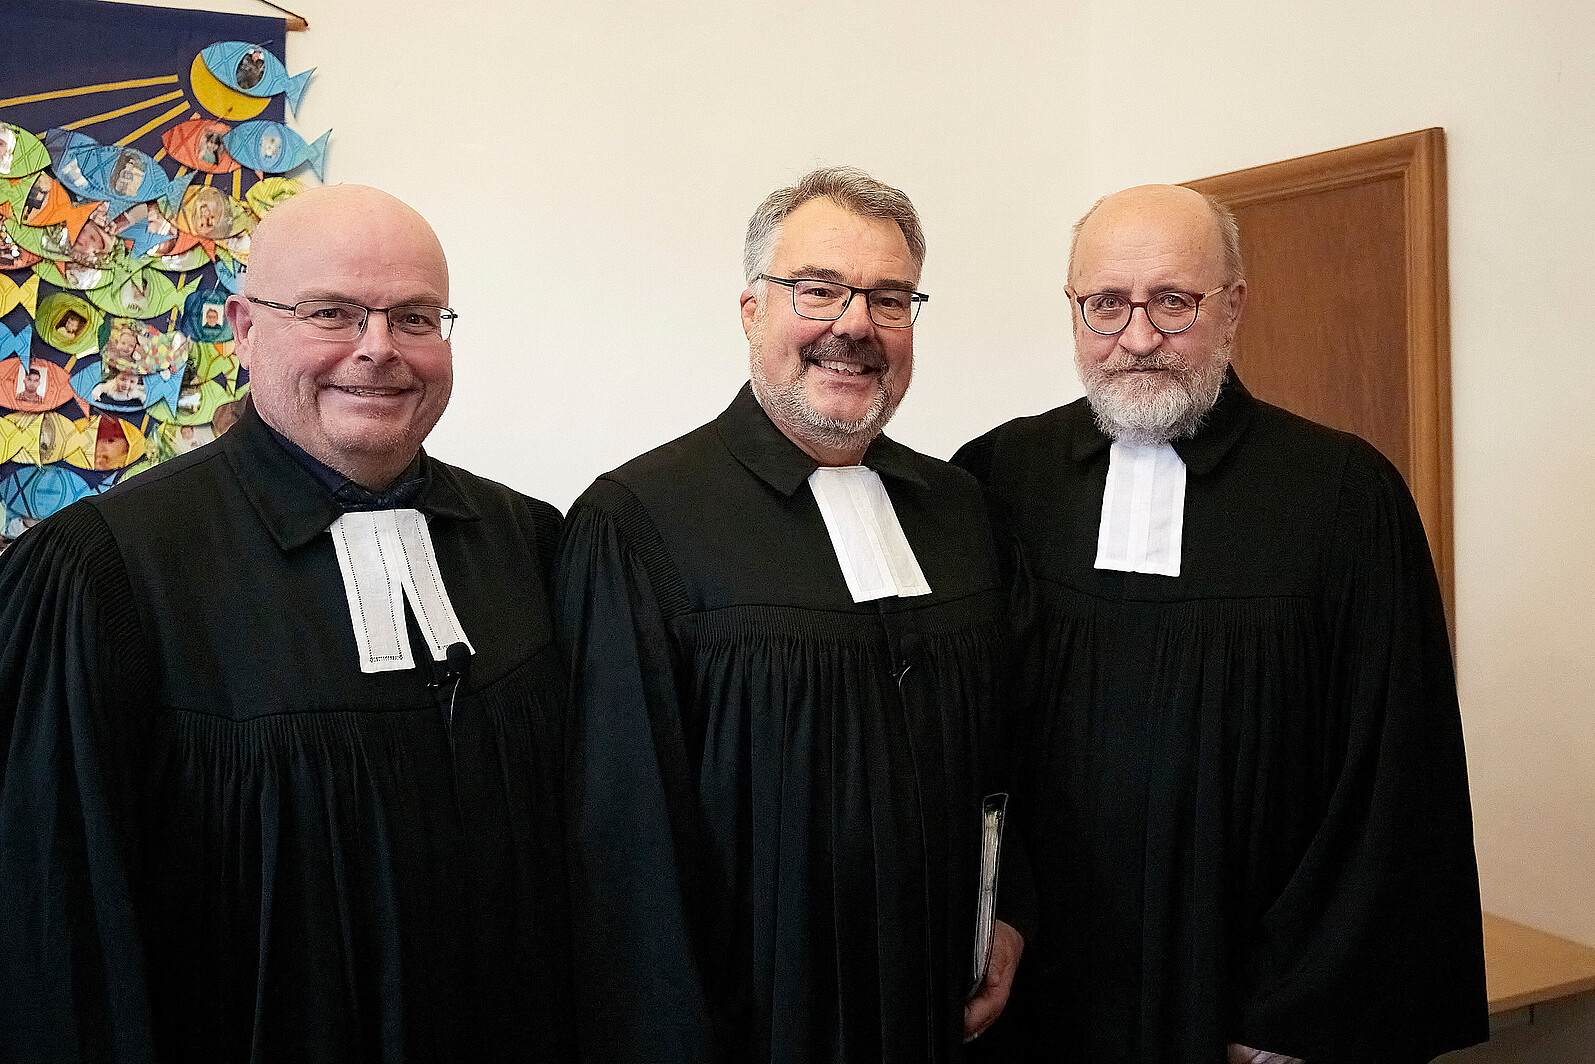 Pfarrer Erik Schumacher (Mitte) mit seinen bisherigen Amtskollegen Oliver Joswig (l.) und Hans-Peter Bruckhoff (r.).